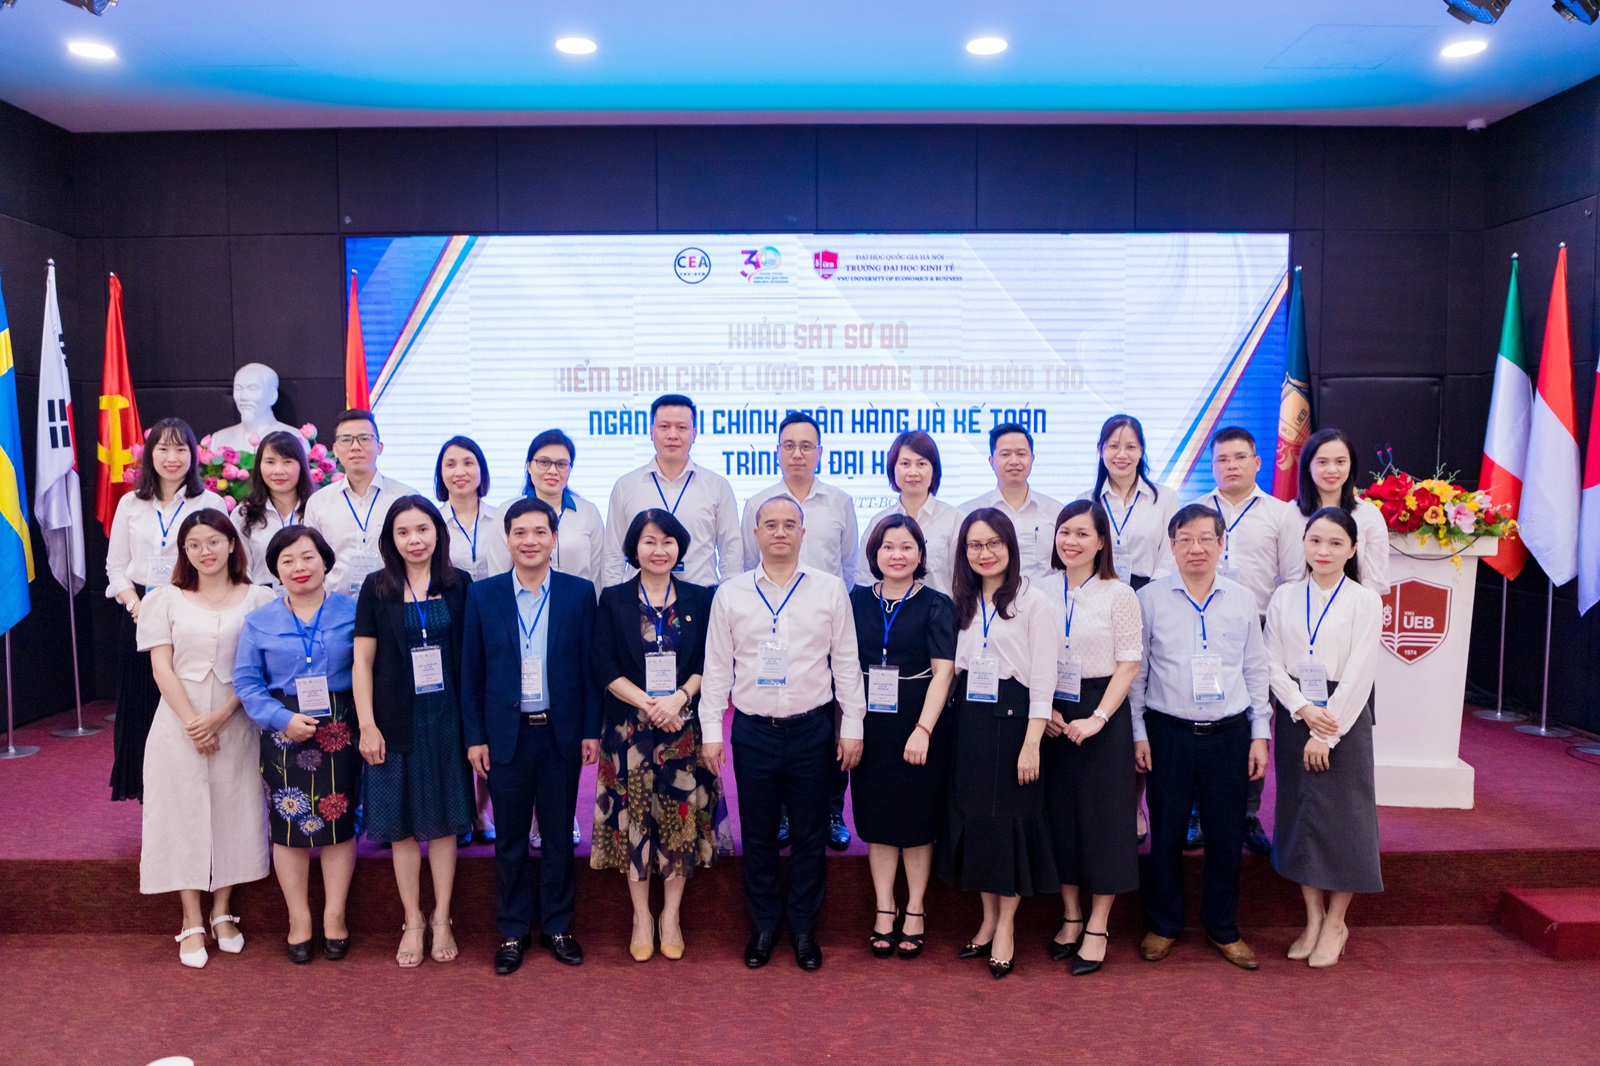 UEB – trường đại học đầu tiên tại Việt Nam có 02 Chương trình đào tạo thuộc nhóm ngành Quản trị - Quản lý được đánh giá ngoài có tỷ lệ số tiêu chí đạt 100% theo tiêu chuẩn kiểm định của Bộ GD&ĐT